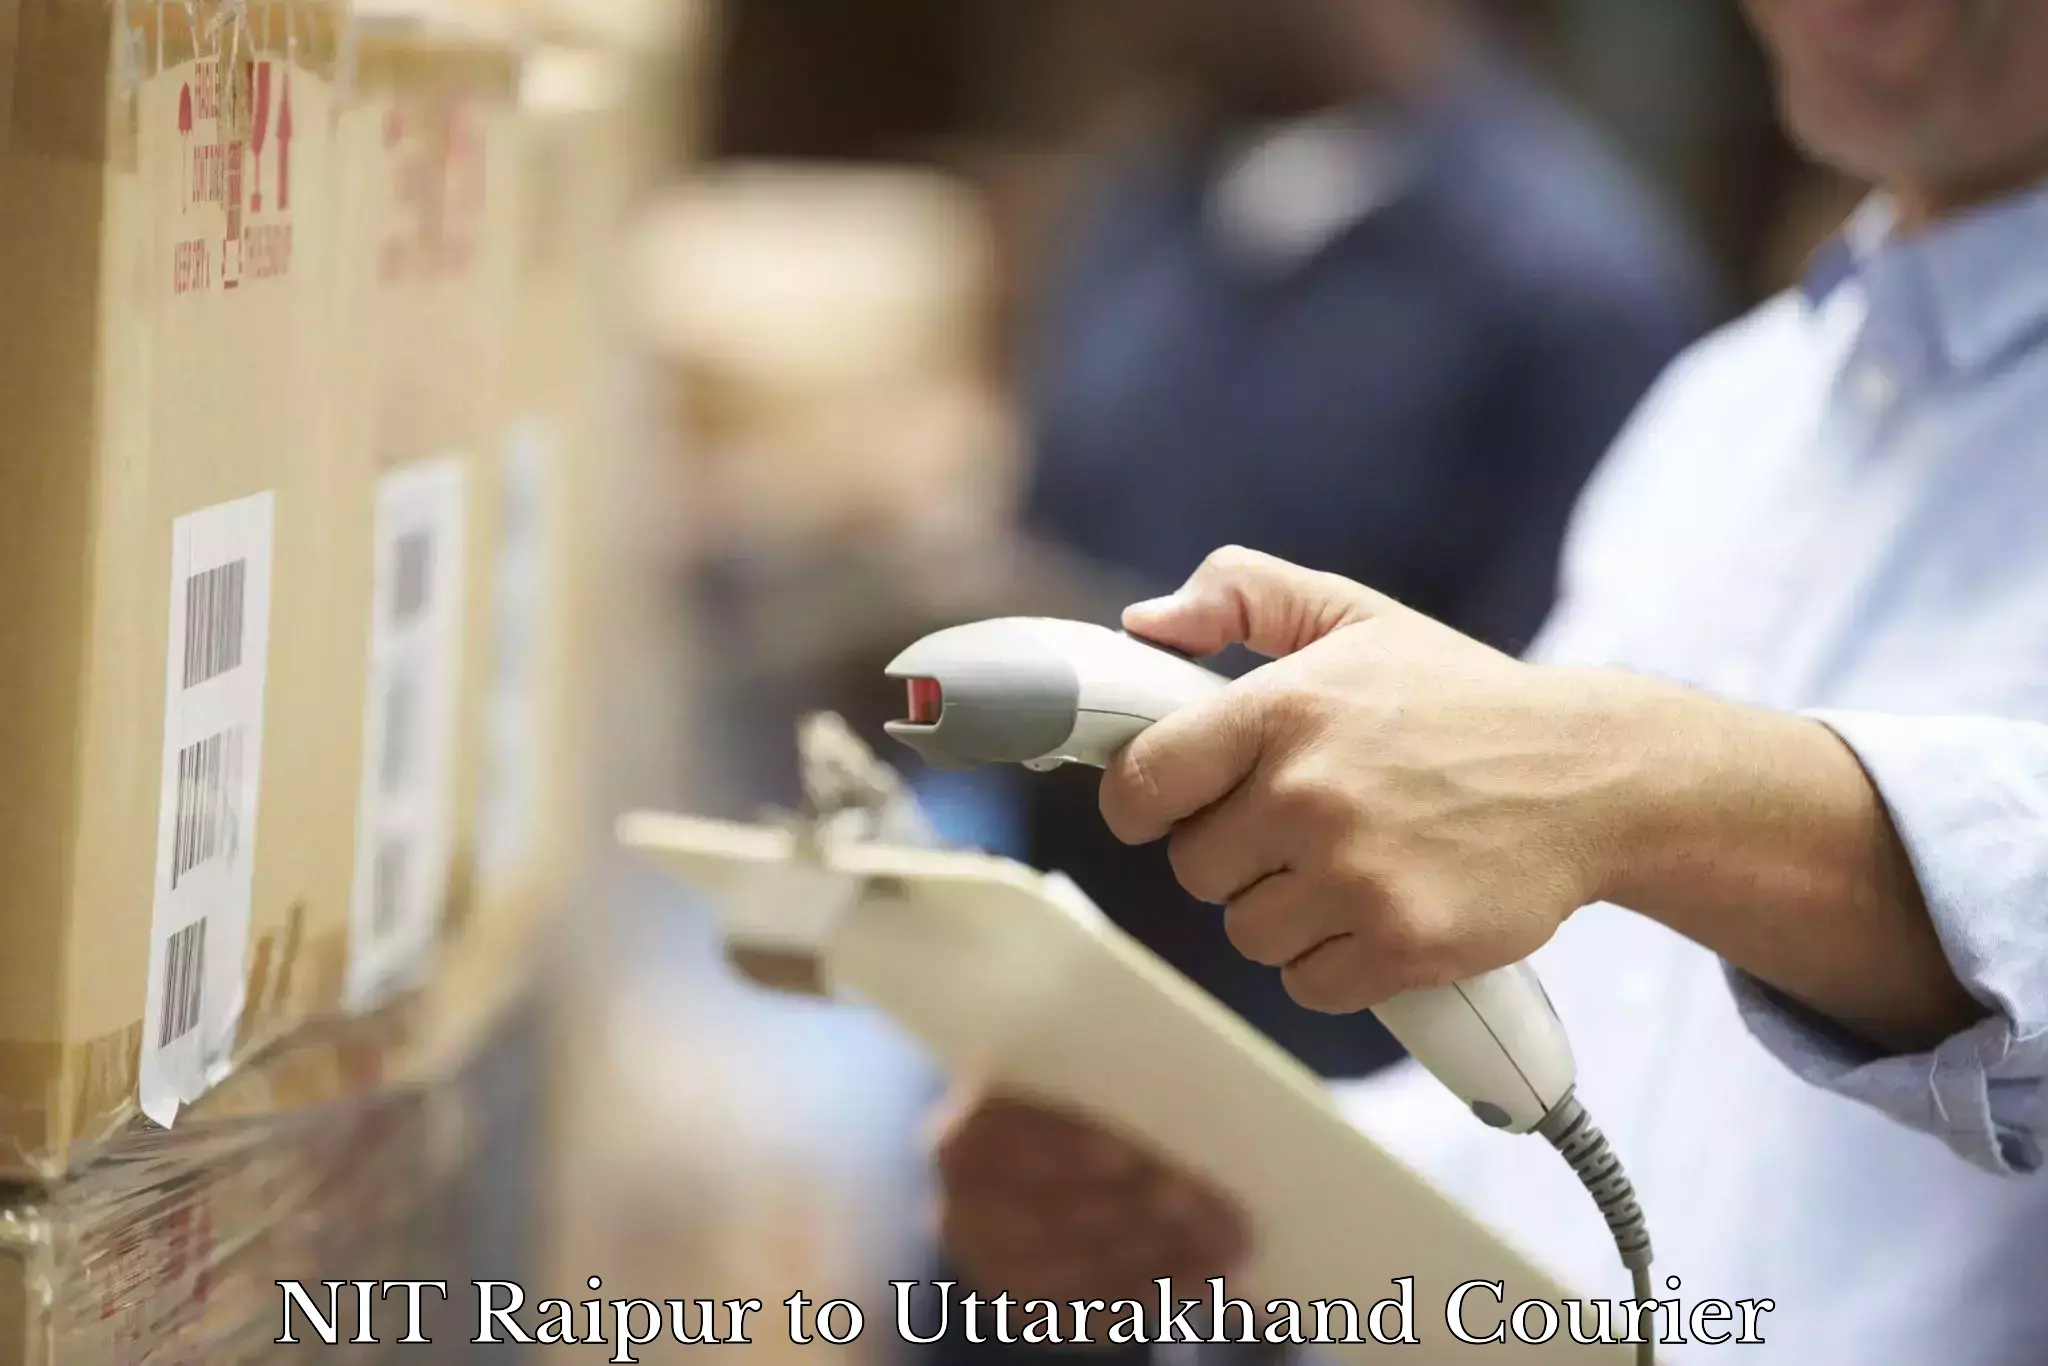 Residential courier service NIT Raipur to Uttarakhand